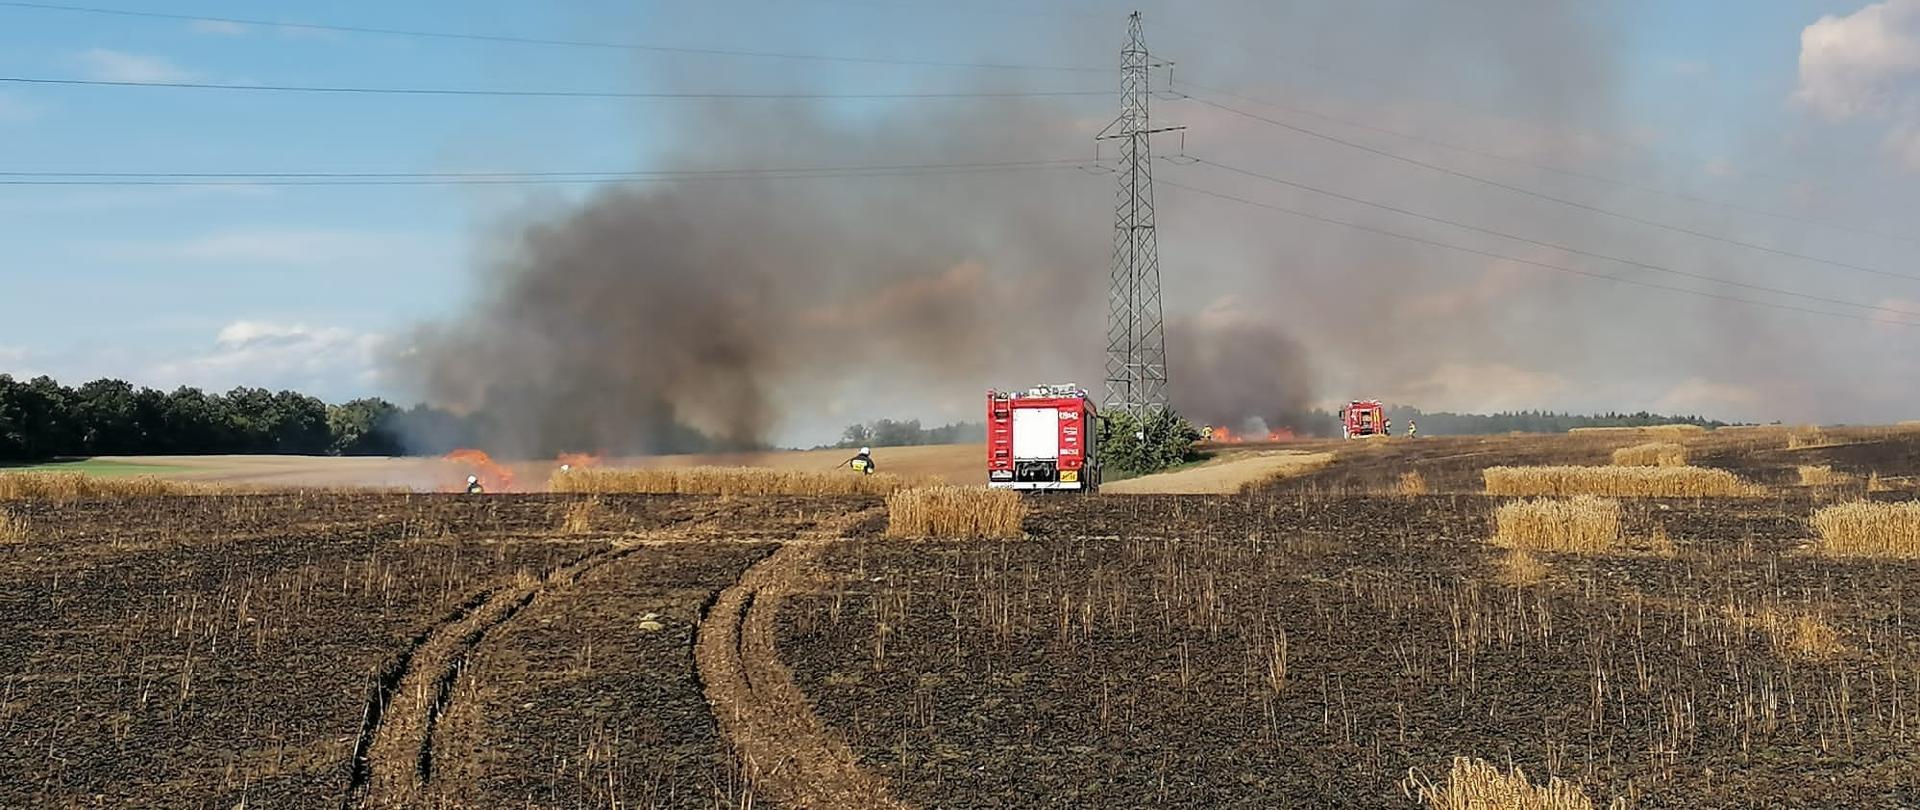 Pożar rżyska. Na zdjęciu spalone pole zboża, w oddali samochody strażackie i dym.